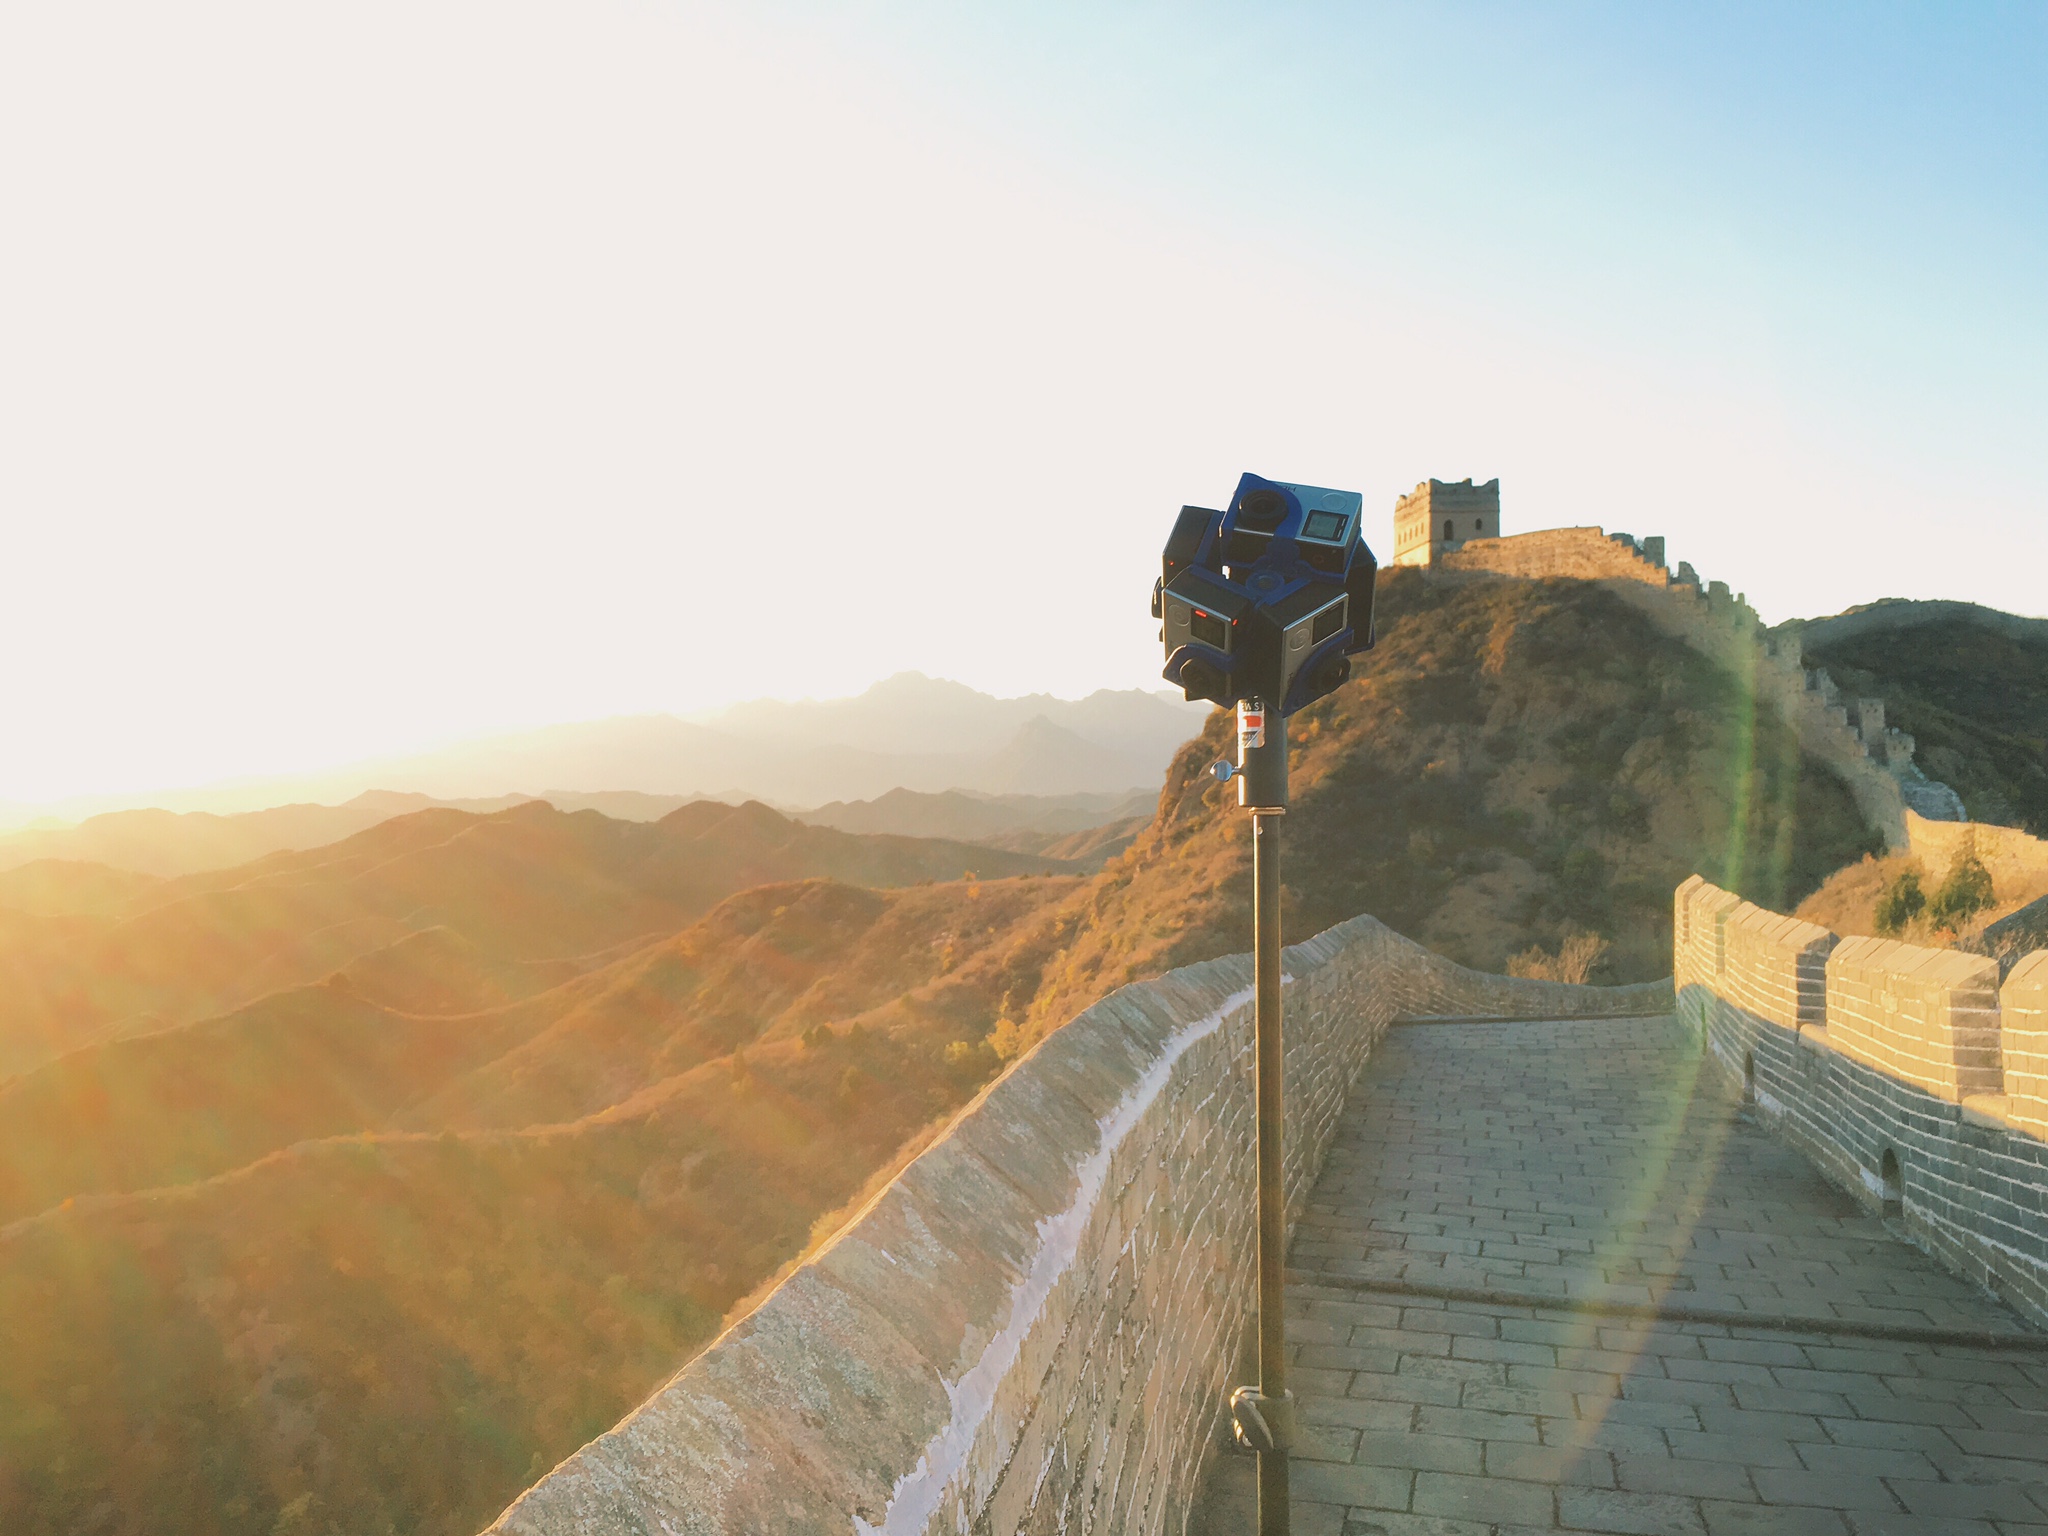 Pro7 at Great Wall